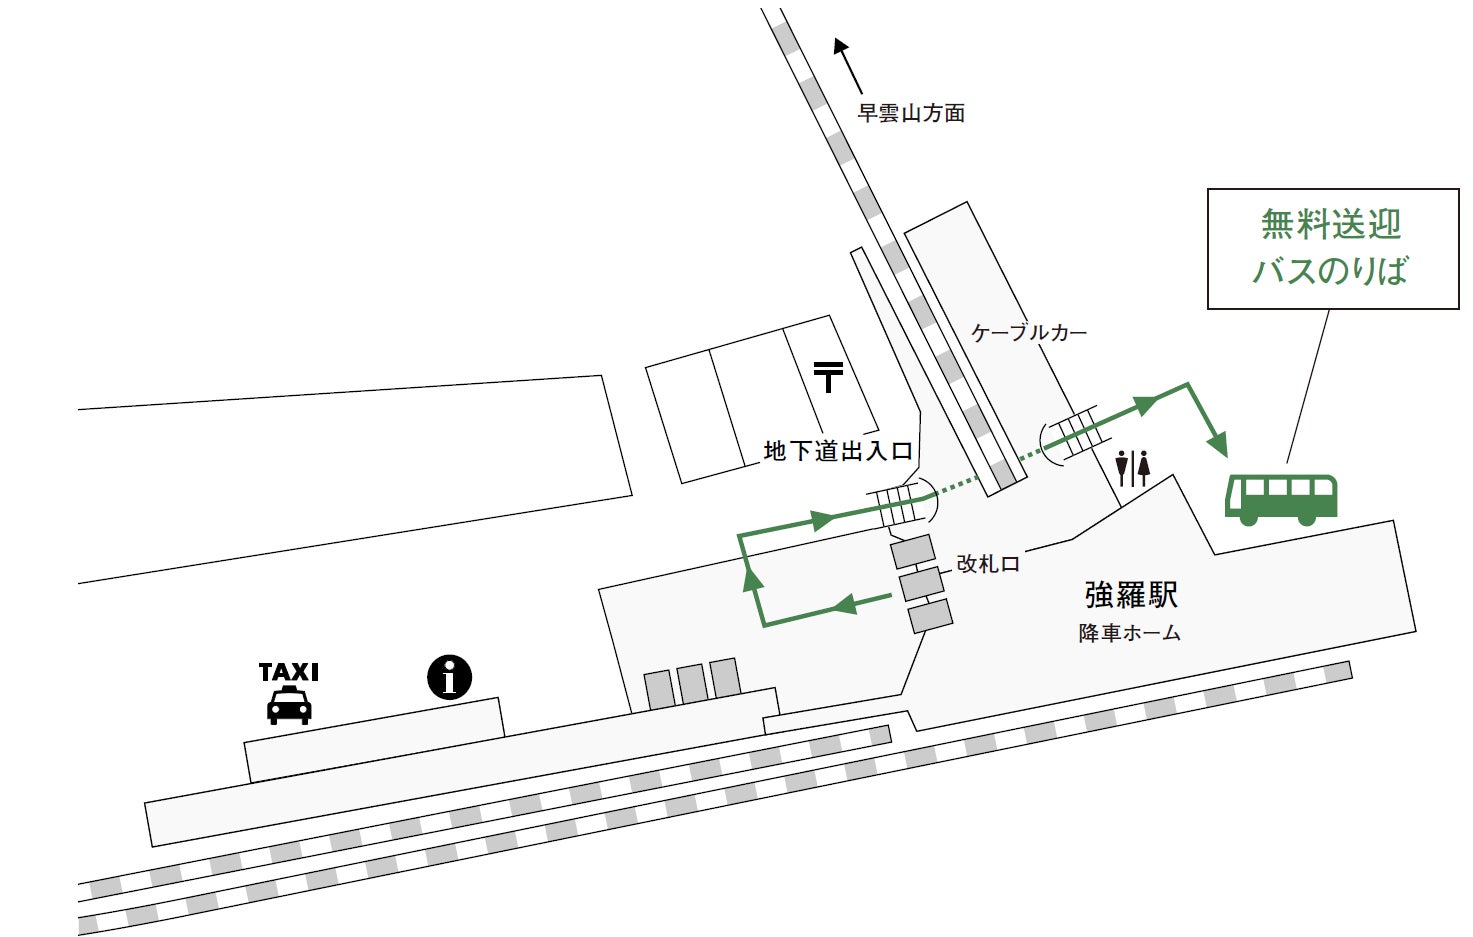 【横浜ロイヤルパークホテル】ビル大規模修繕工事にともなう営業一時休止のお知らせ